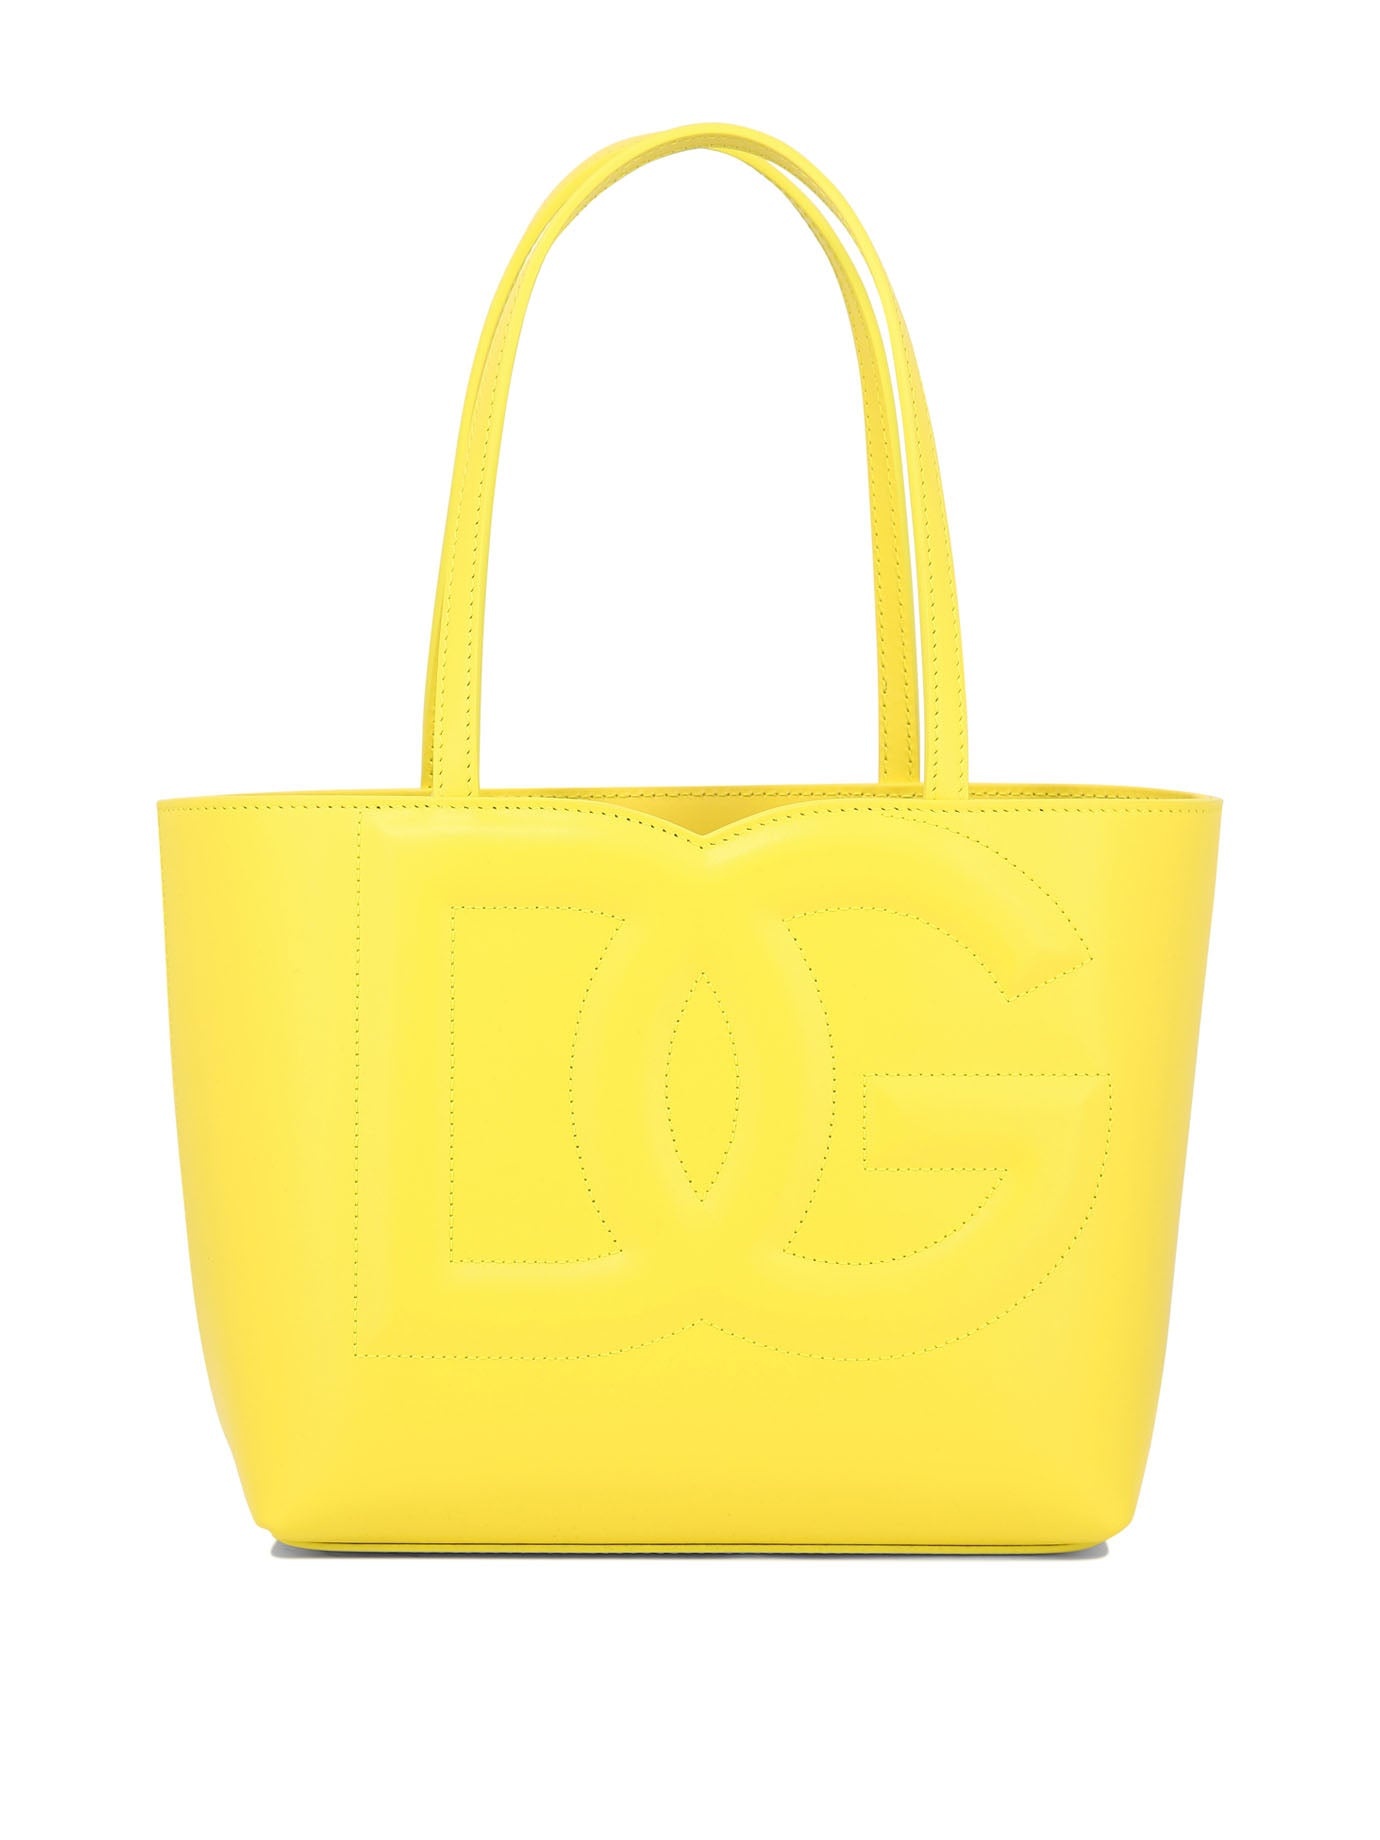 Dolce & Gabbana Dg Shoulder Bag - 1